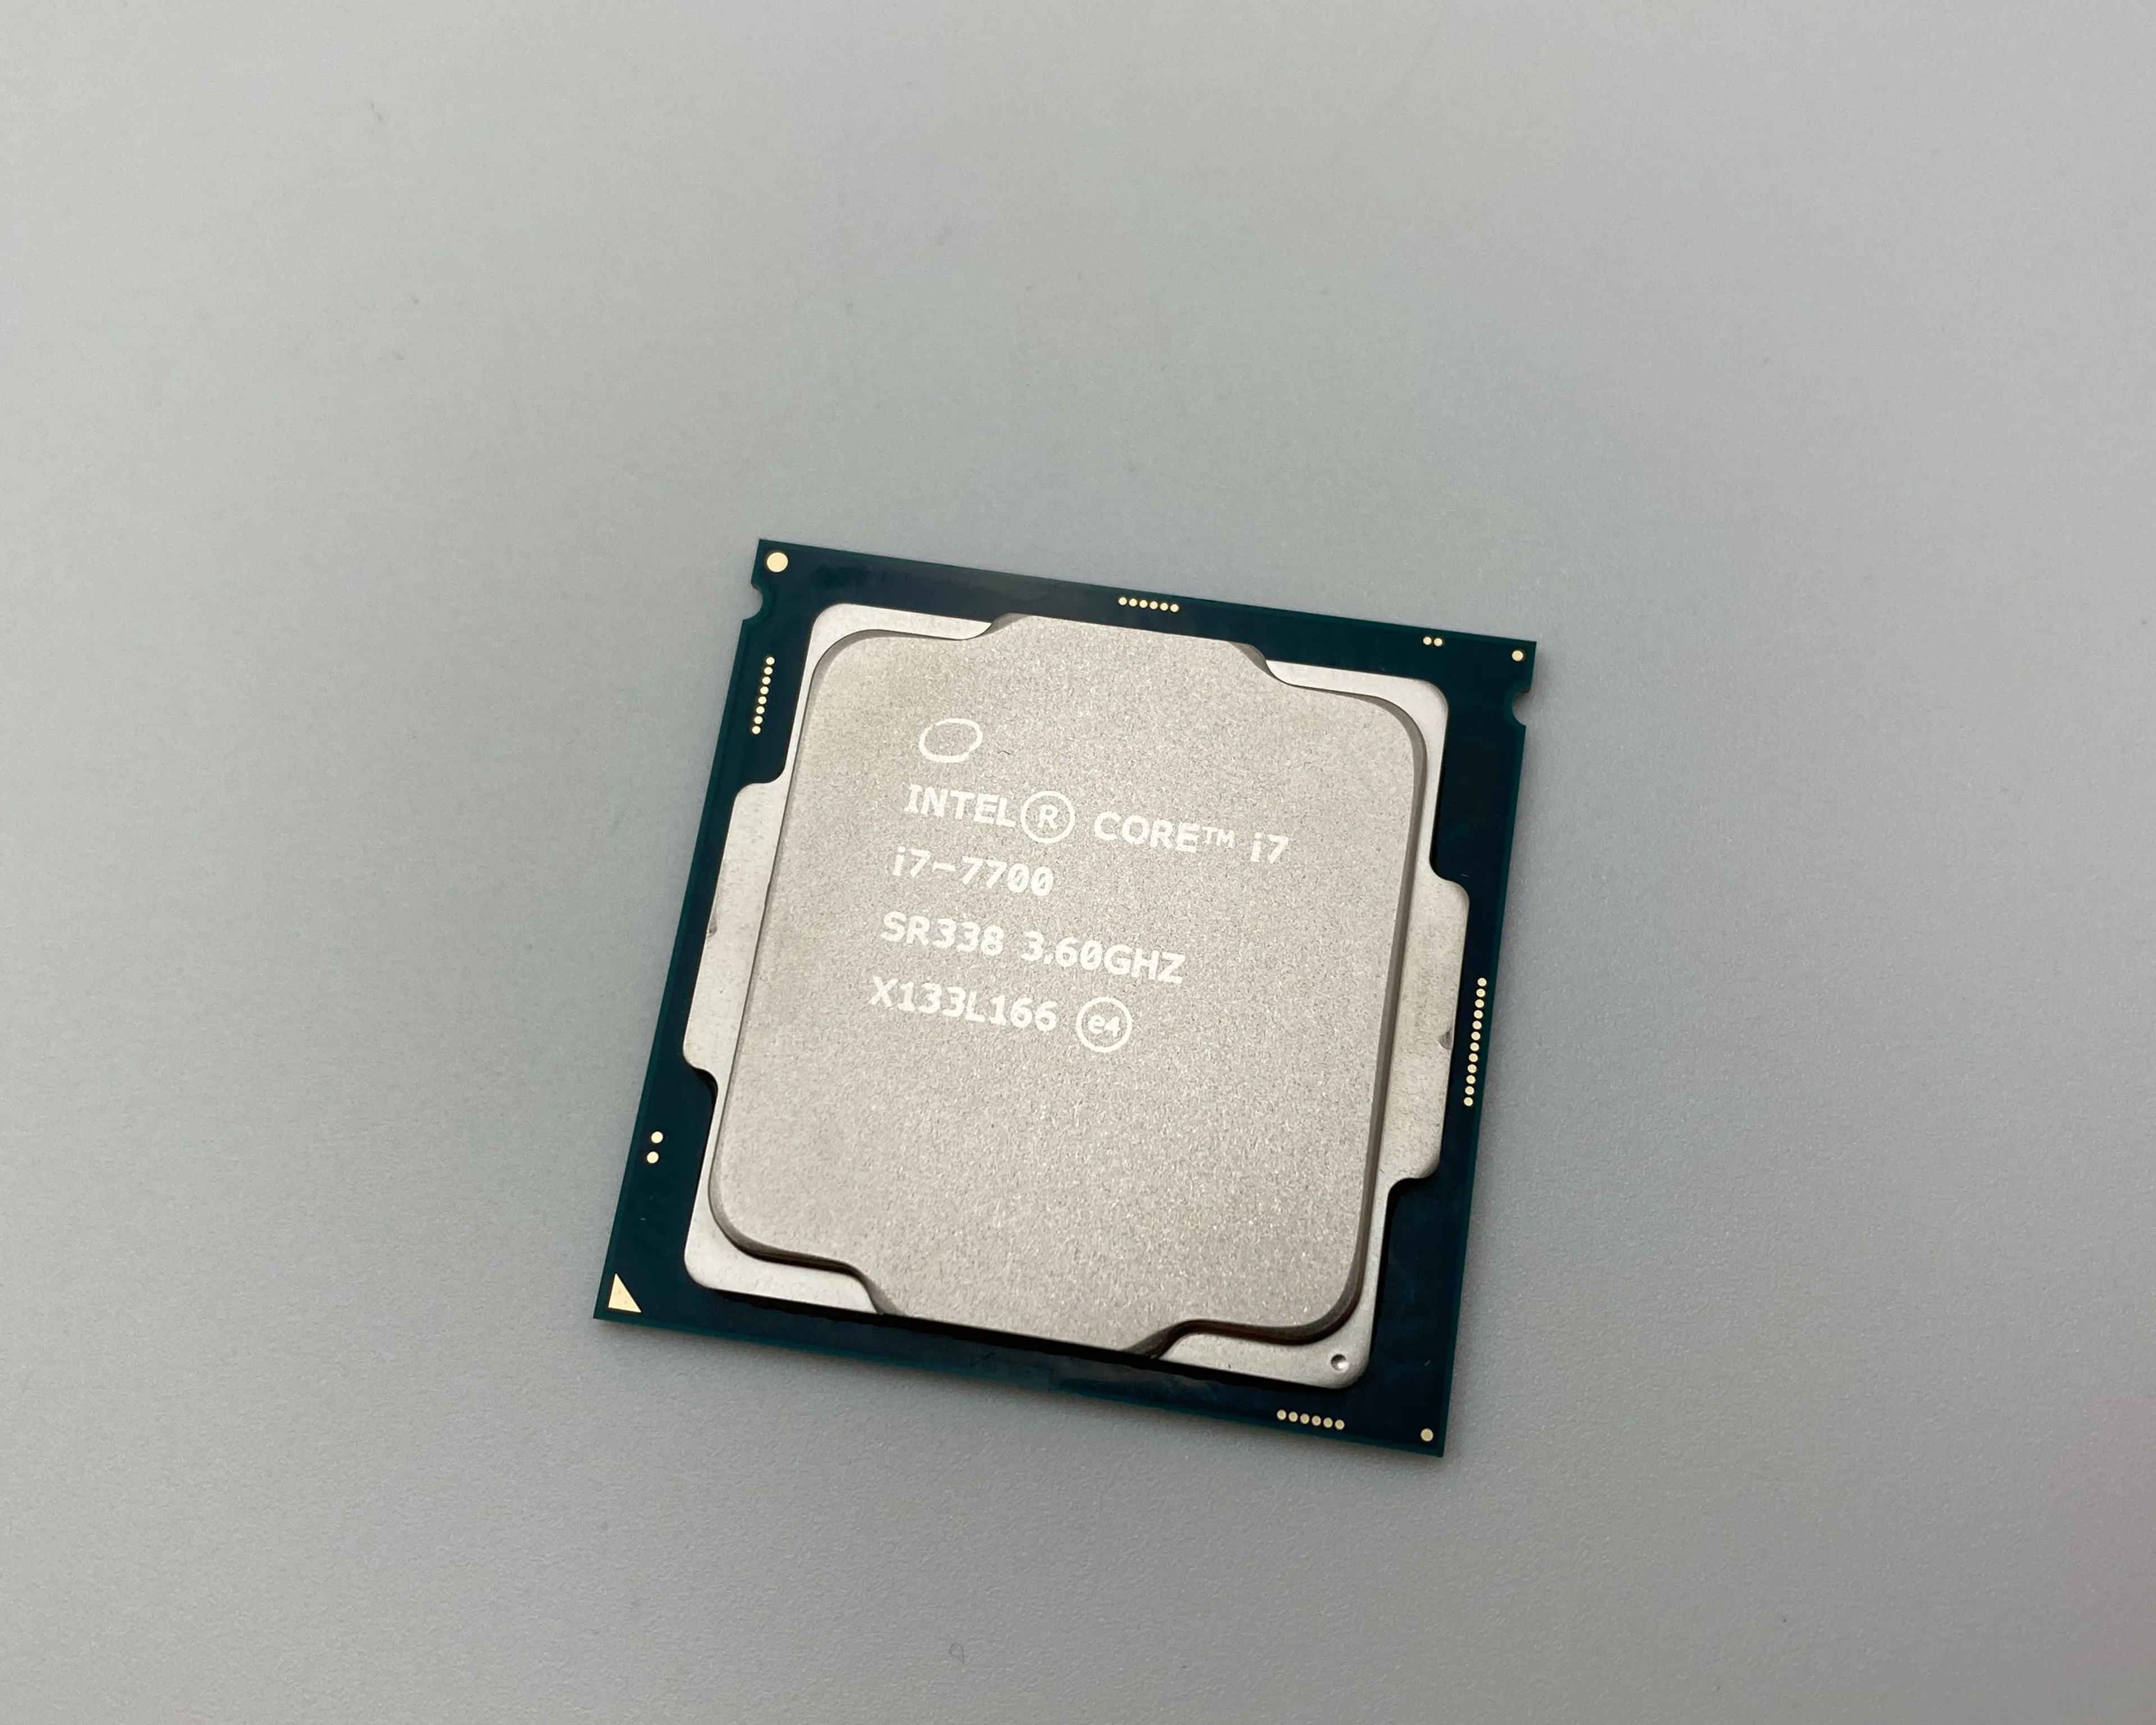 Intel Core i7-7700 Quad-Core 3.60GHz 8MB LGA1151 CPU Processor SR338